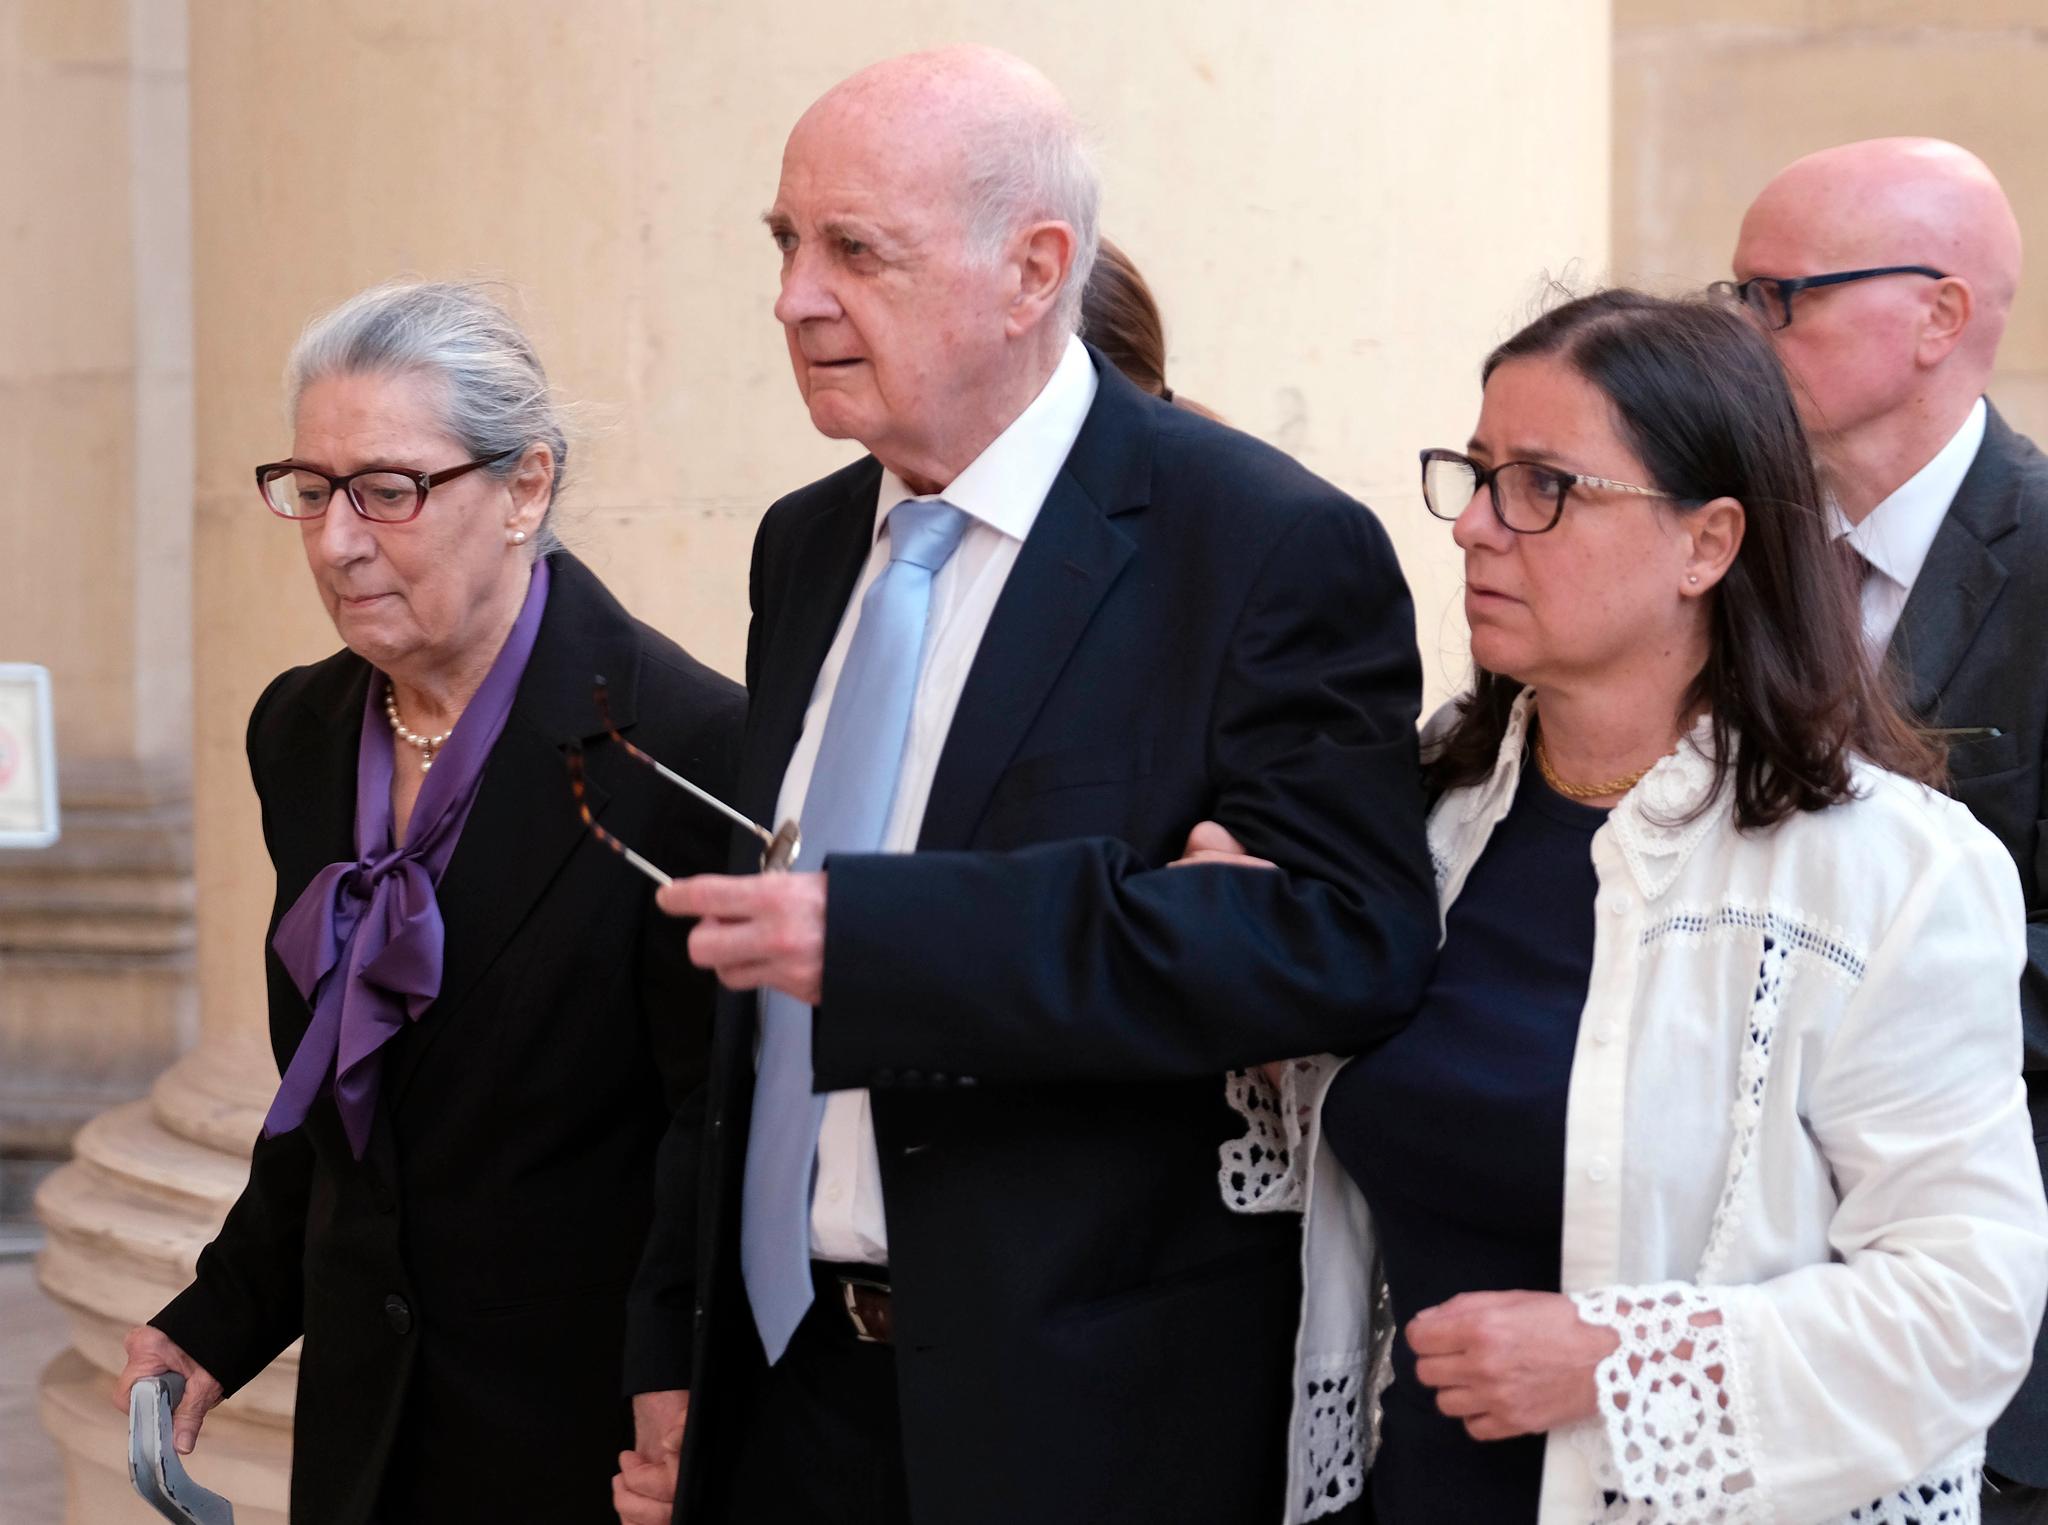 Fra venstre: Rose Marie Vella, Michael A. Vella, og Mandy Mallia, foreldrene og søsteren til Daphne Caruana Galizia, ankommer domstolen i Valletta fredag. 